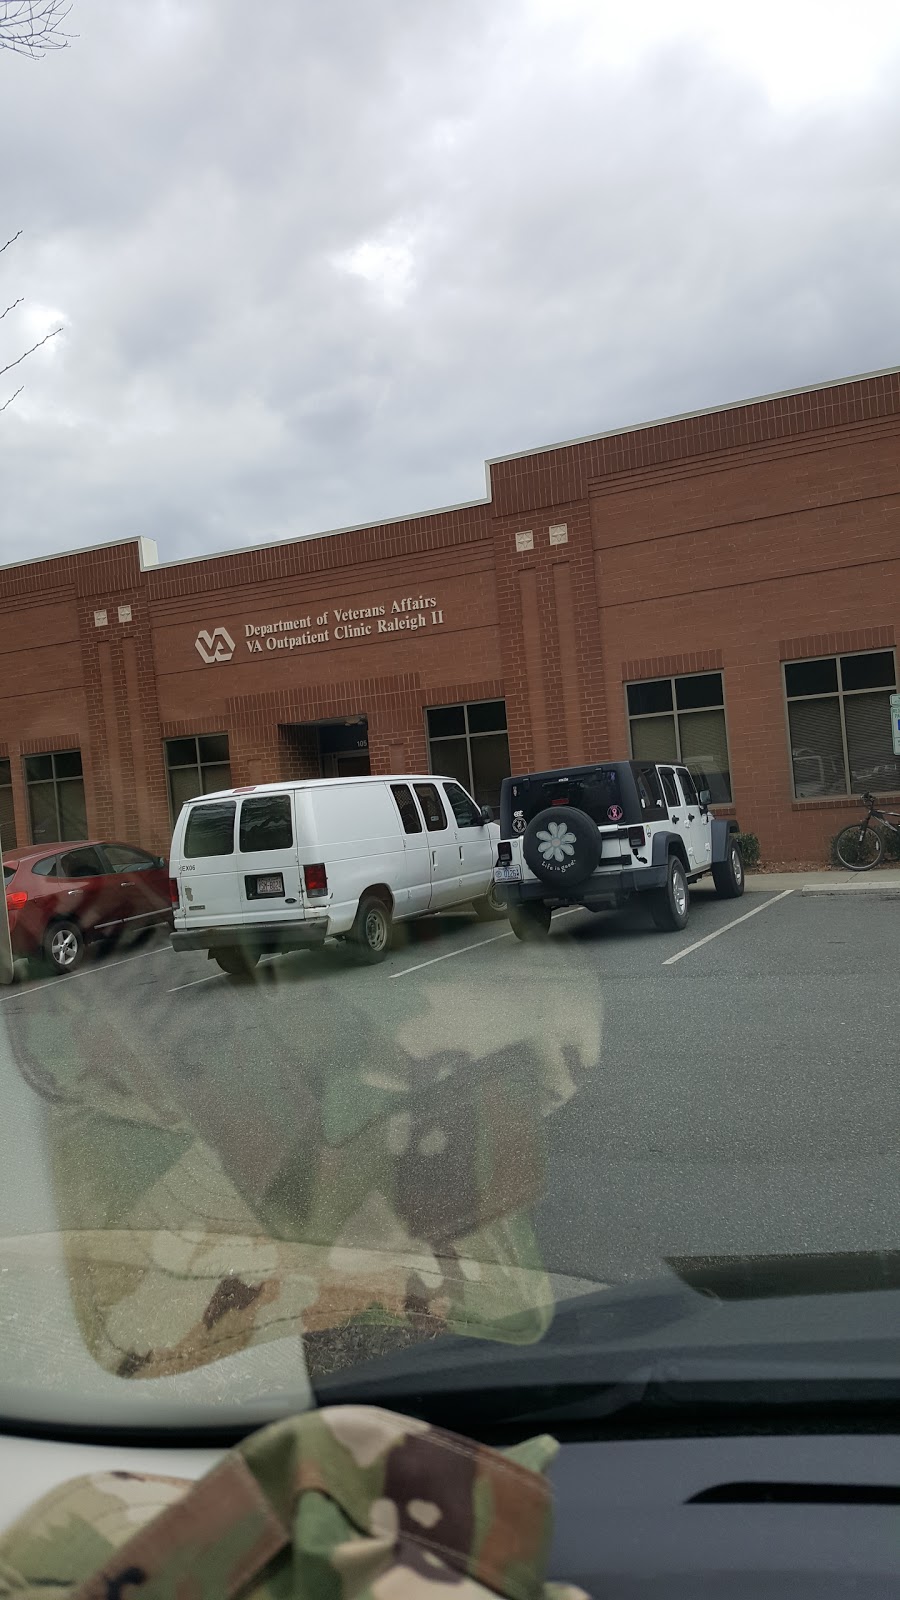 Durham VA Medical Center - Raleigh II VA CBOC